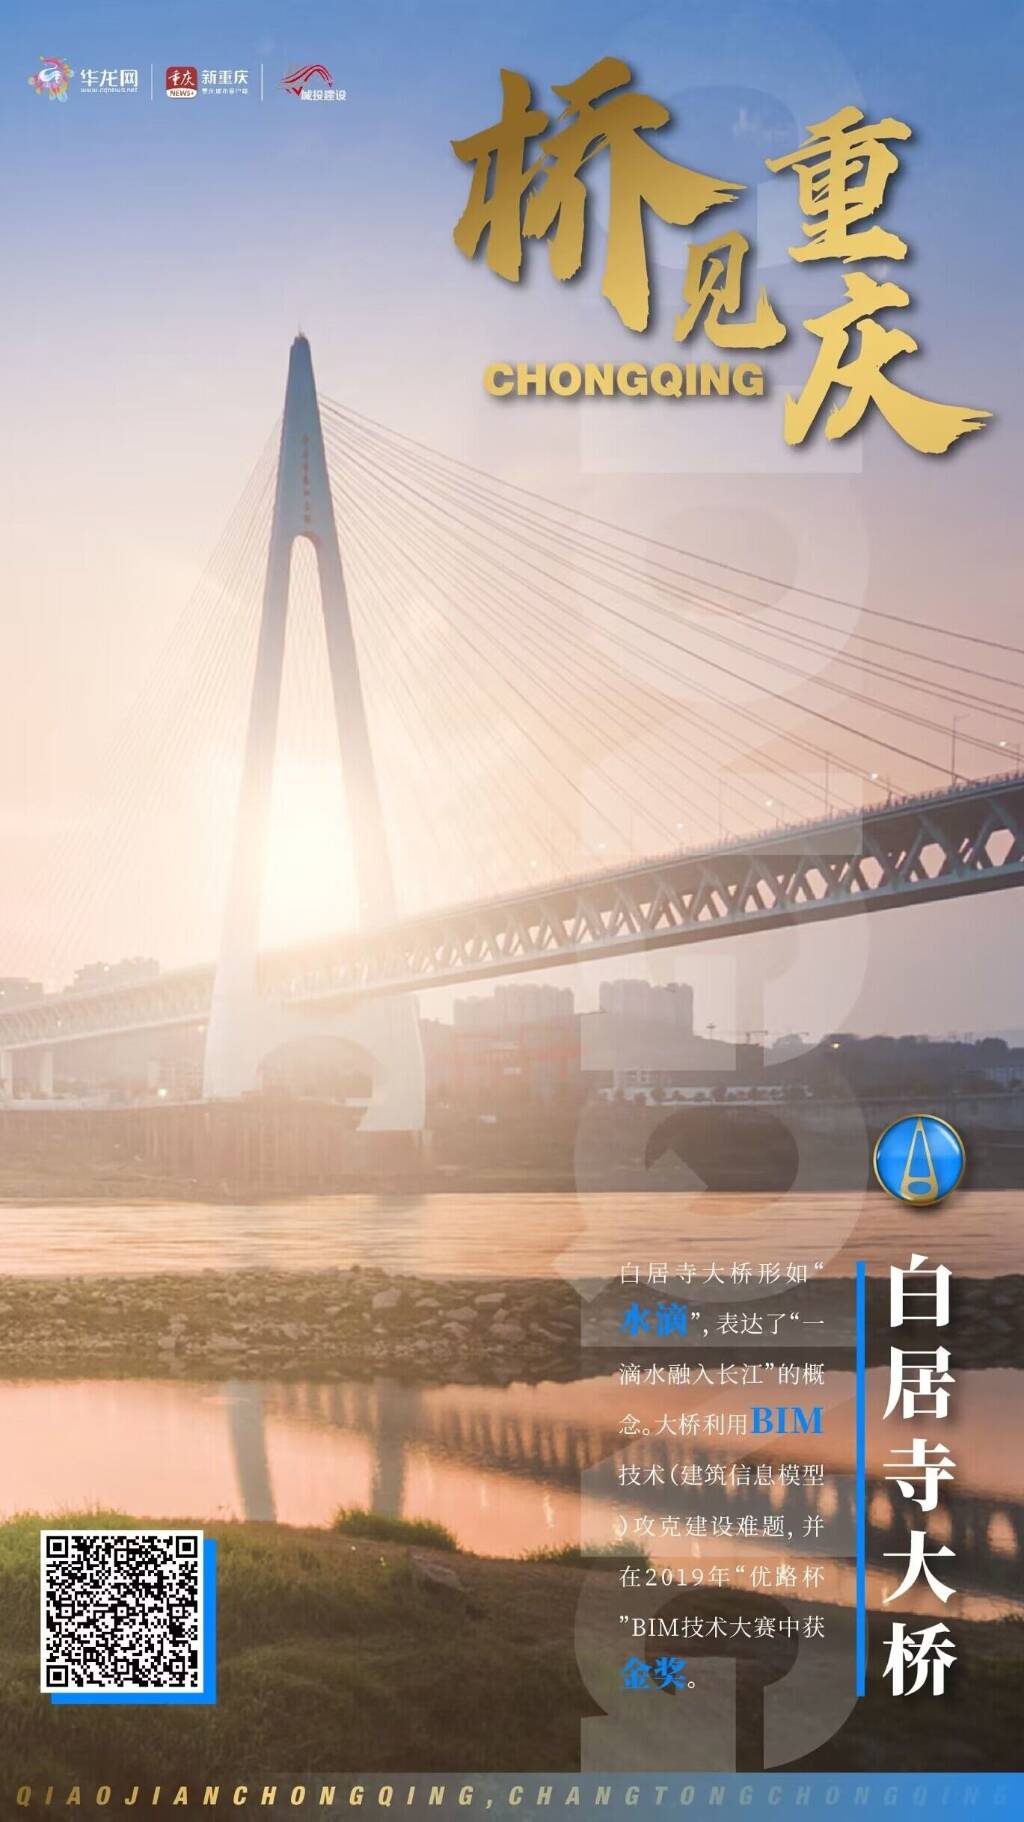 百家融媒重庆行丨桥见重庆 建造未来